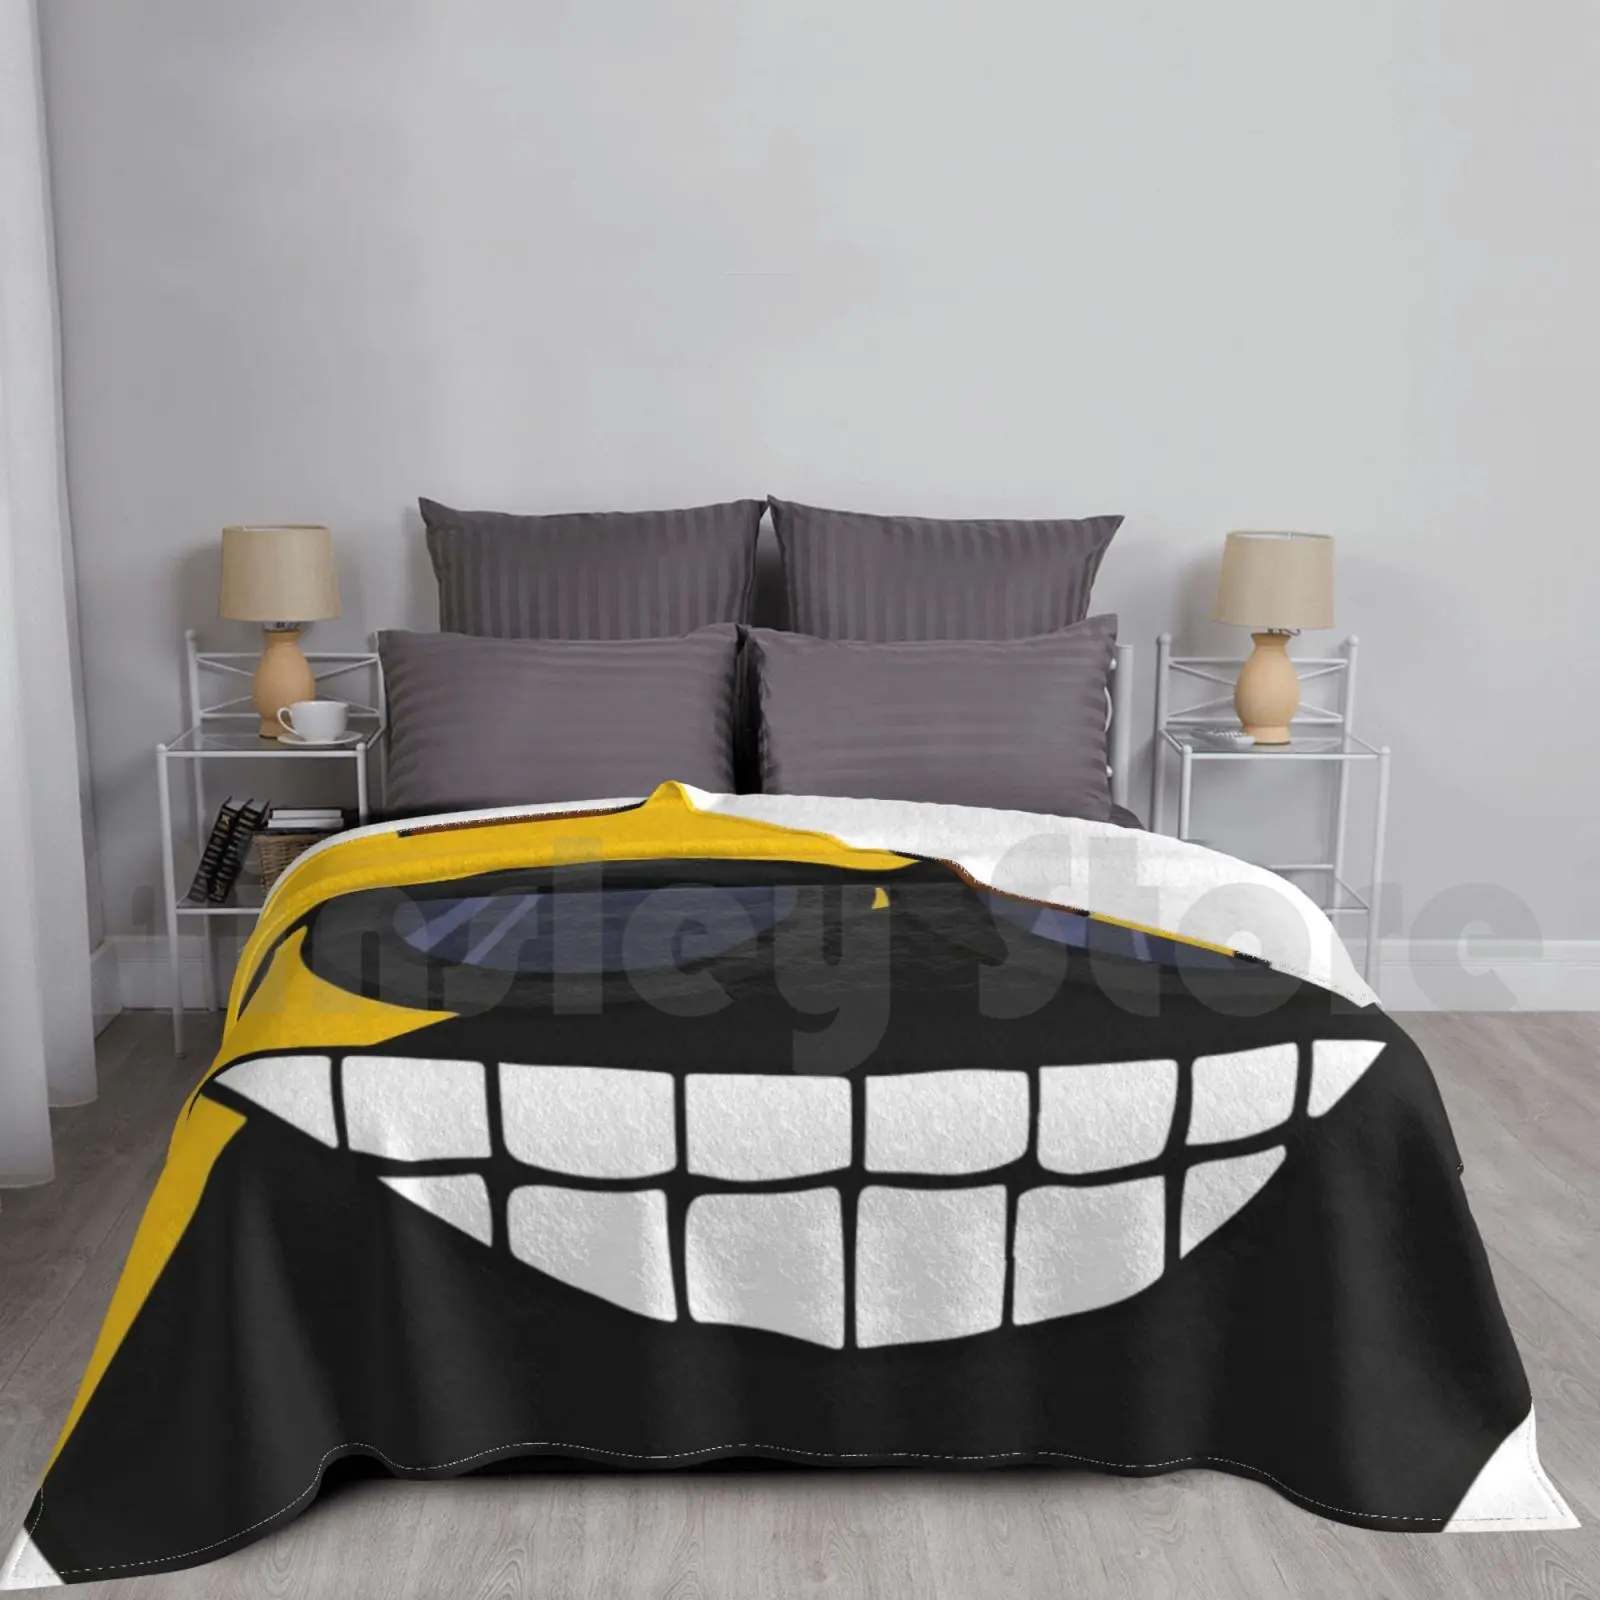 

Одеяло Ancap флаг мем мяч мемы и солнцезащитные очки желтые и черные Hd Высокое качество Интернет-магазин